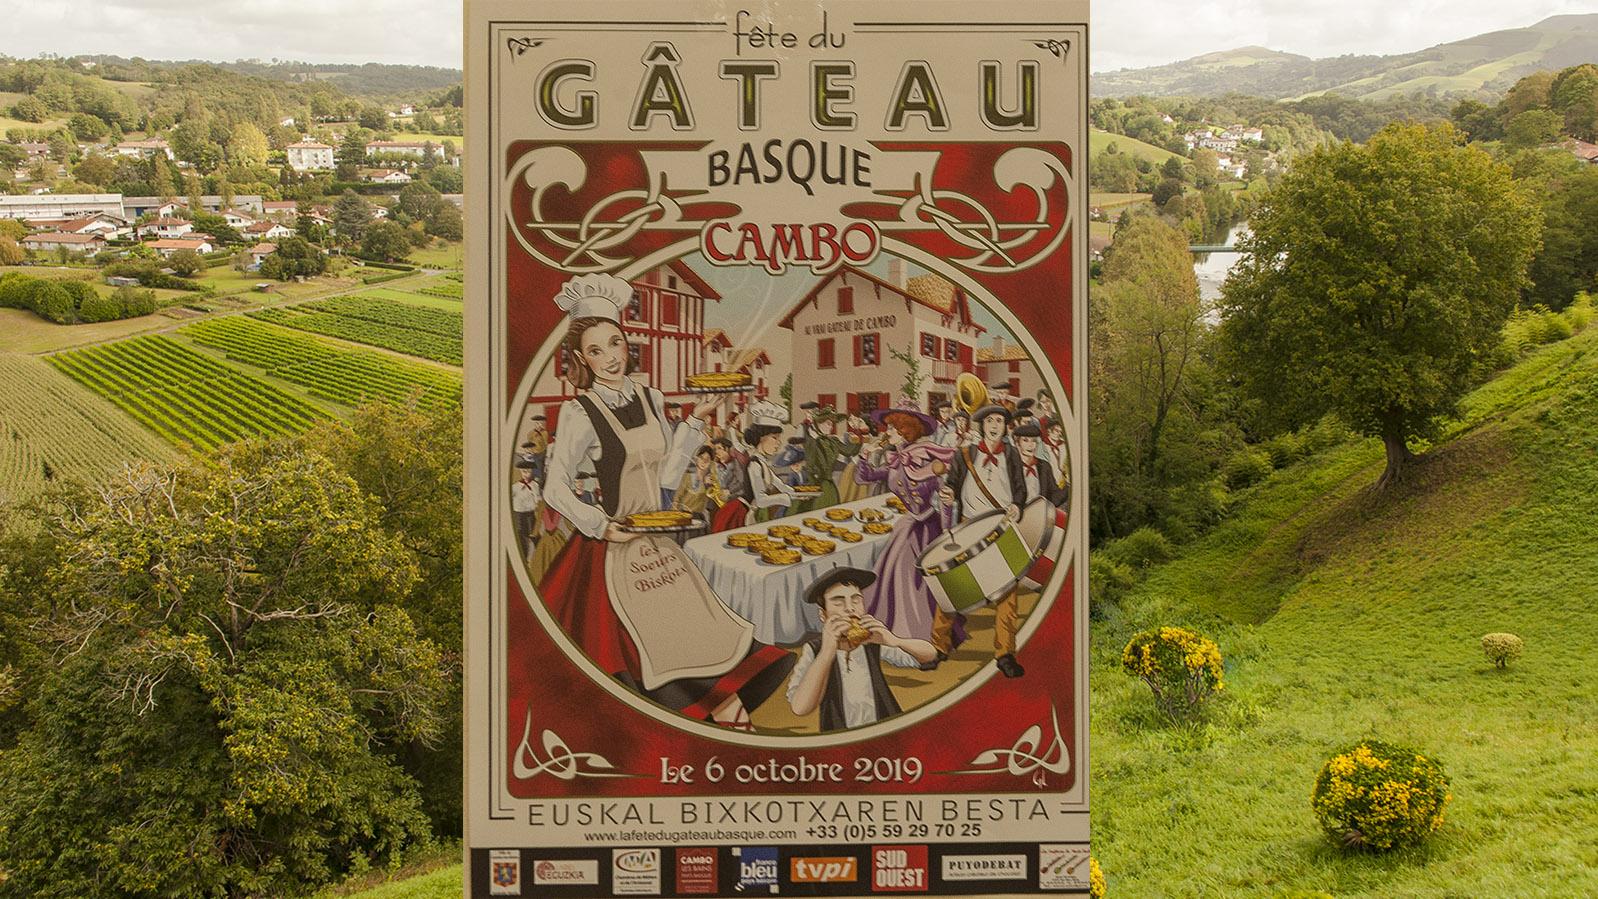 Cambo-les-Bains feiert am 1. Oktoberwochenende die Fête du Gâteau Basque. Foto: Hilke Maunder